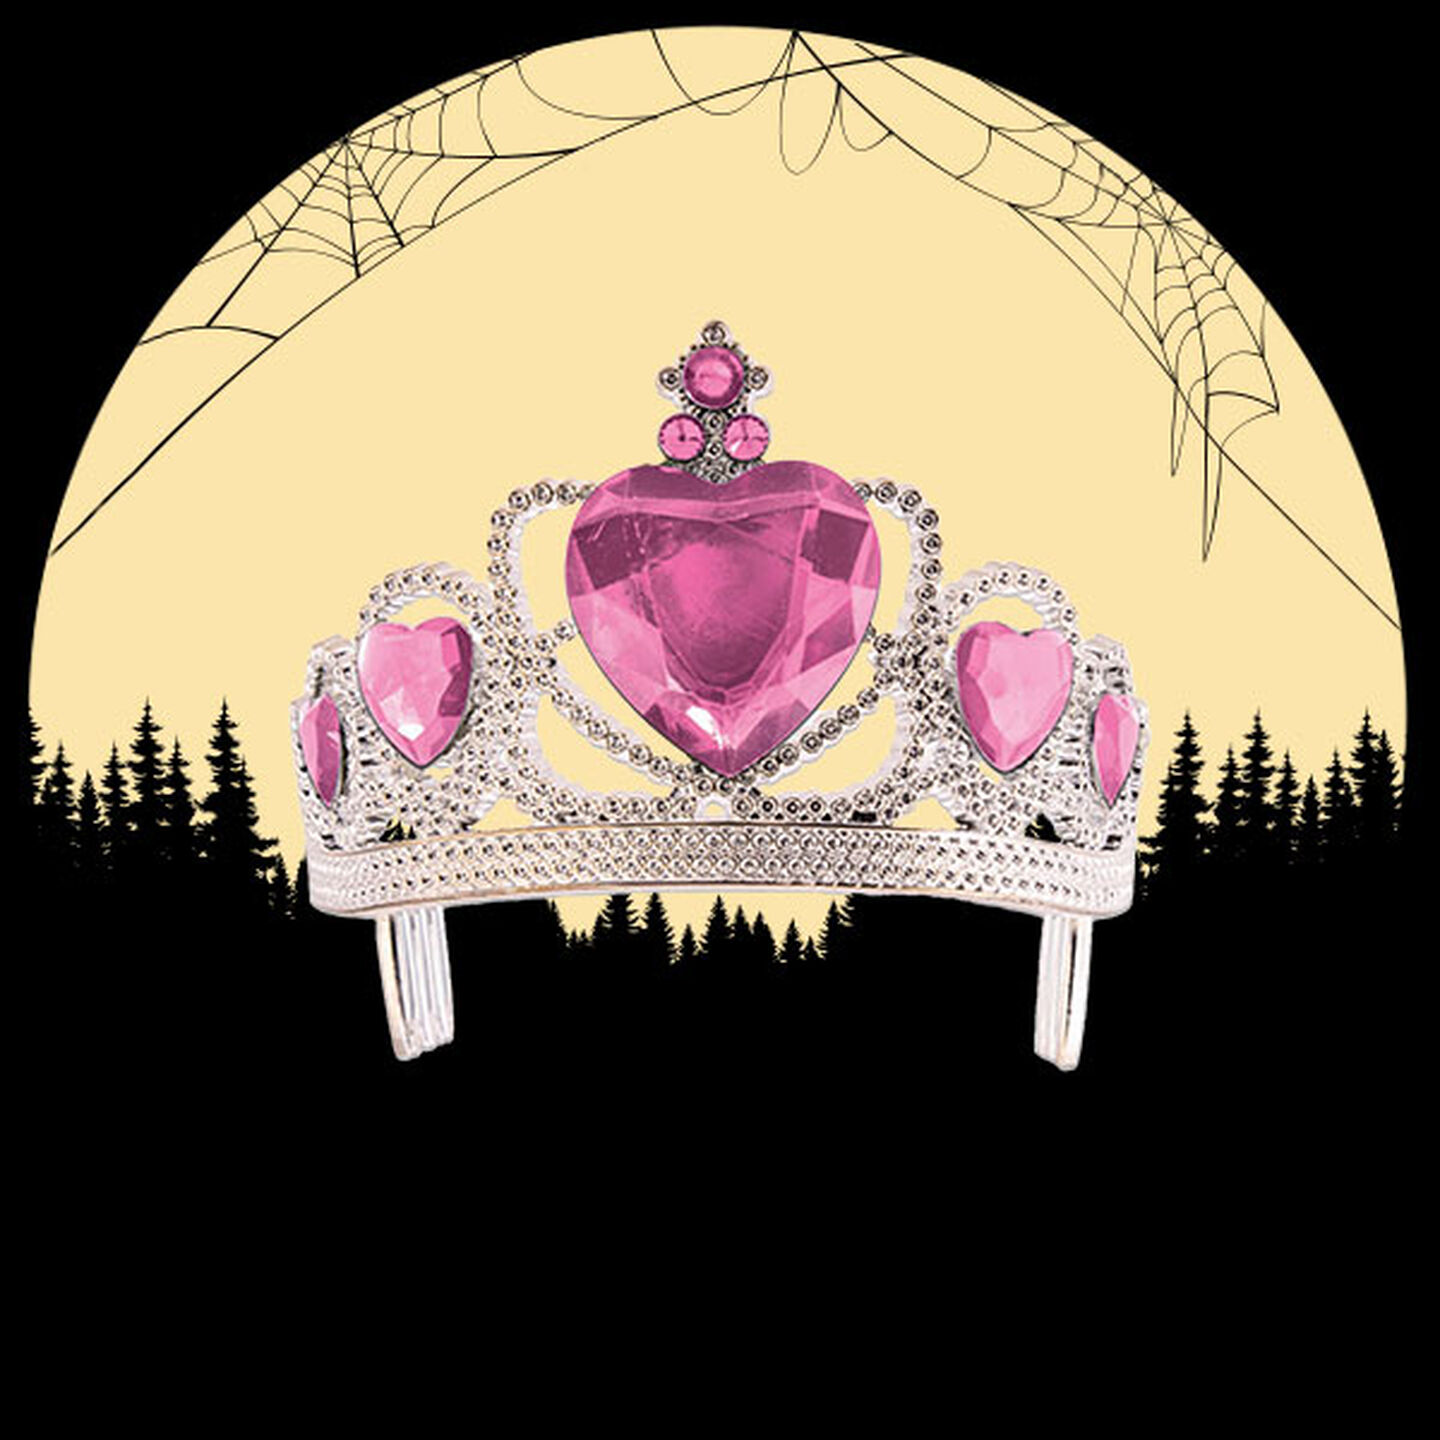 Pink tiara